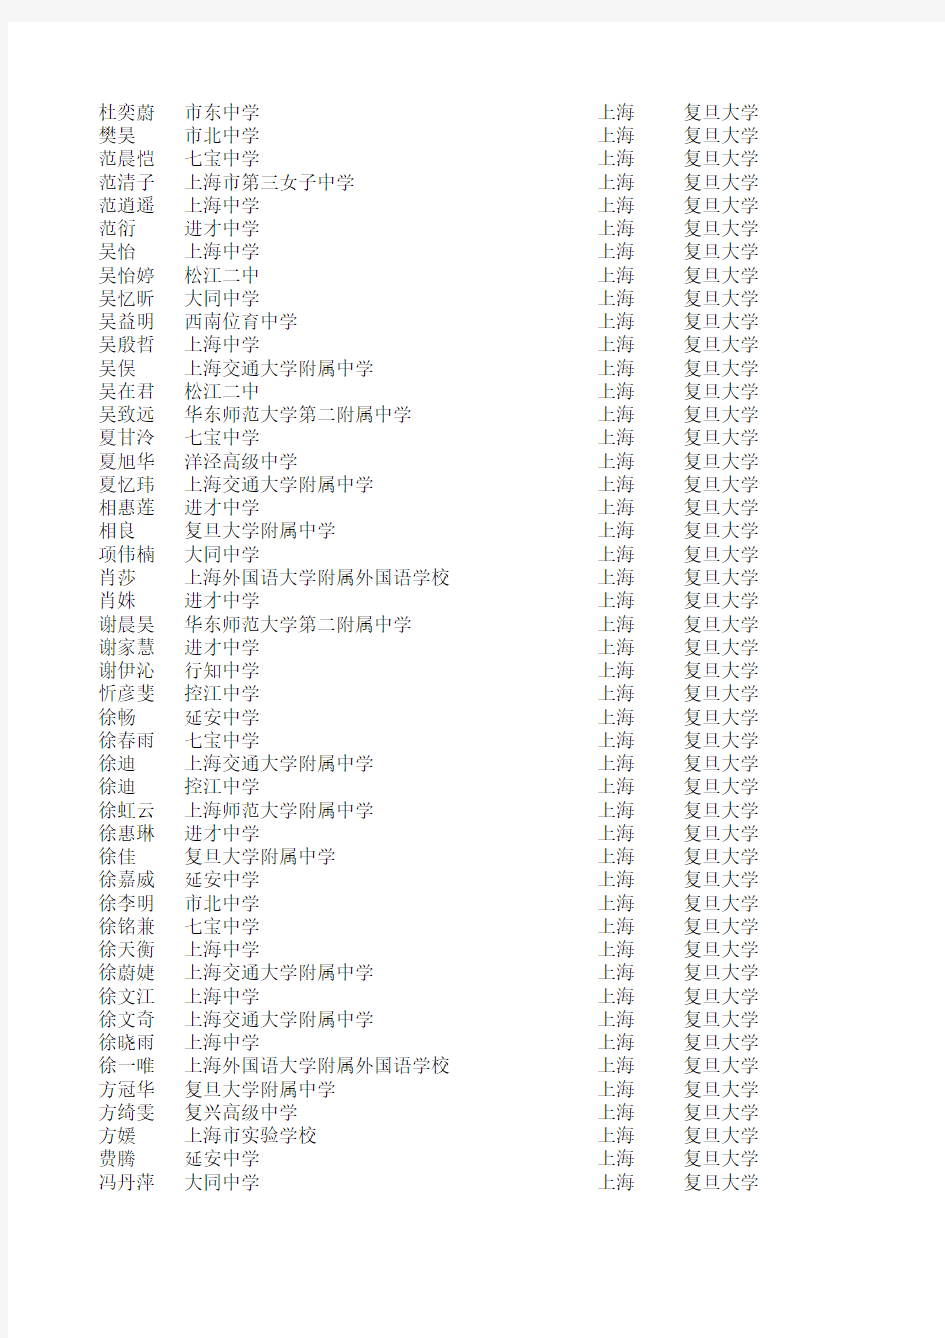 2011年复旦大学自主招生录取名单(上海考生)